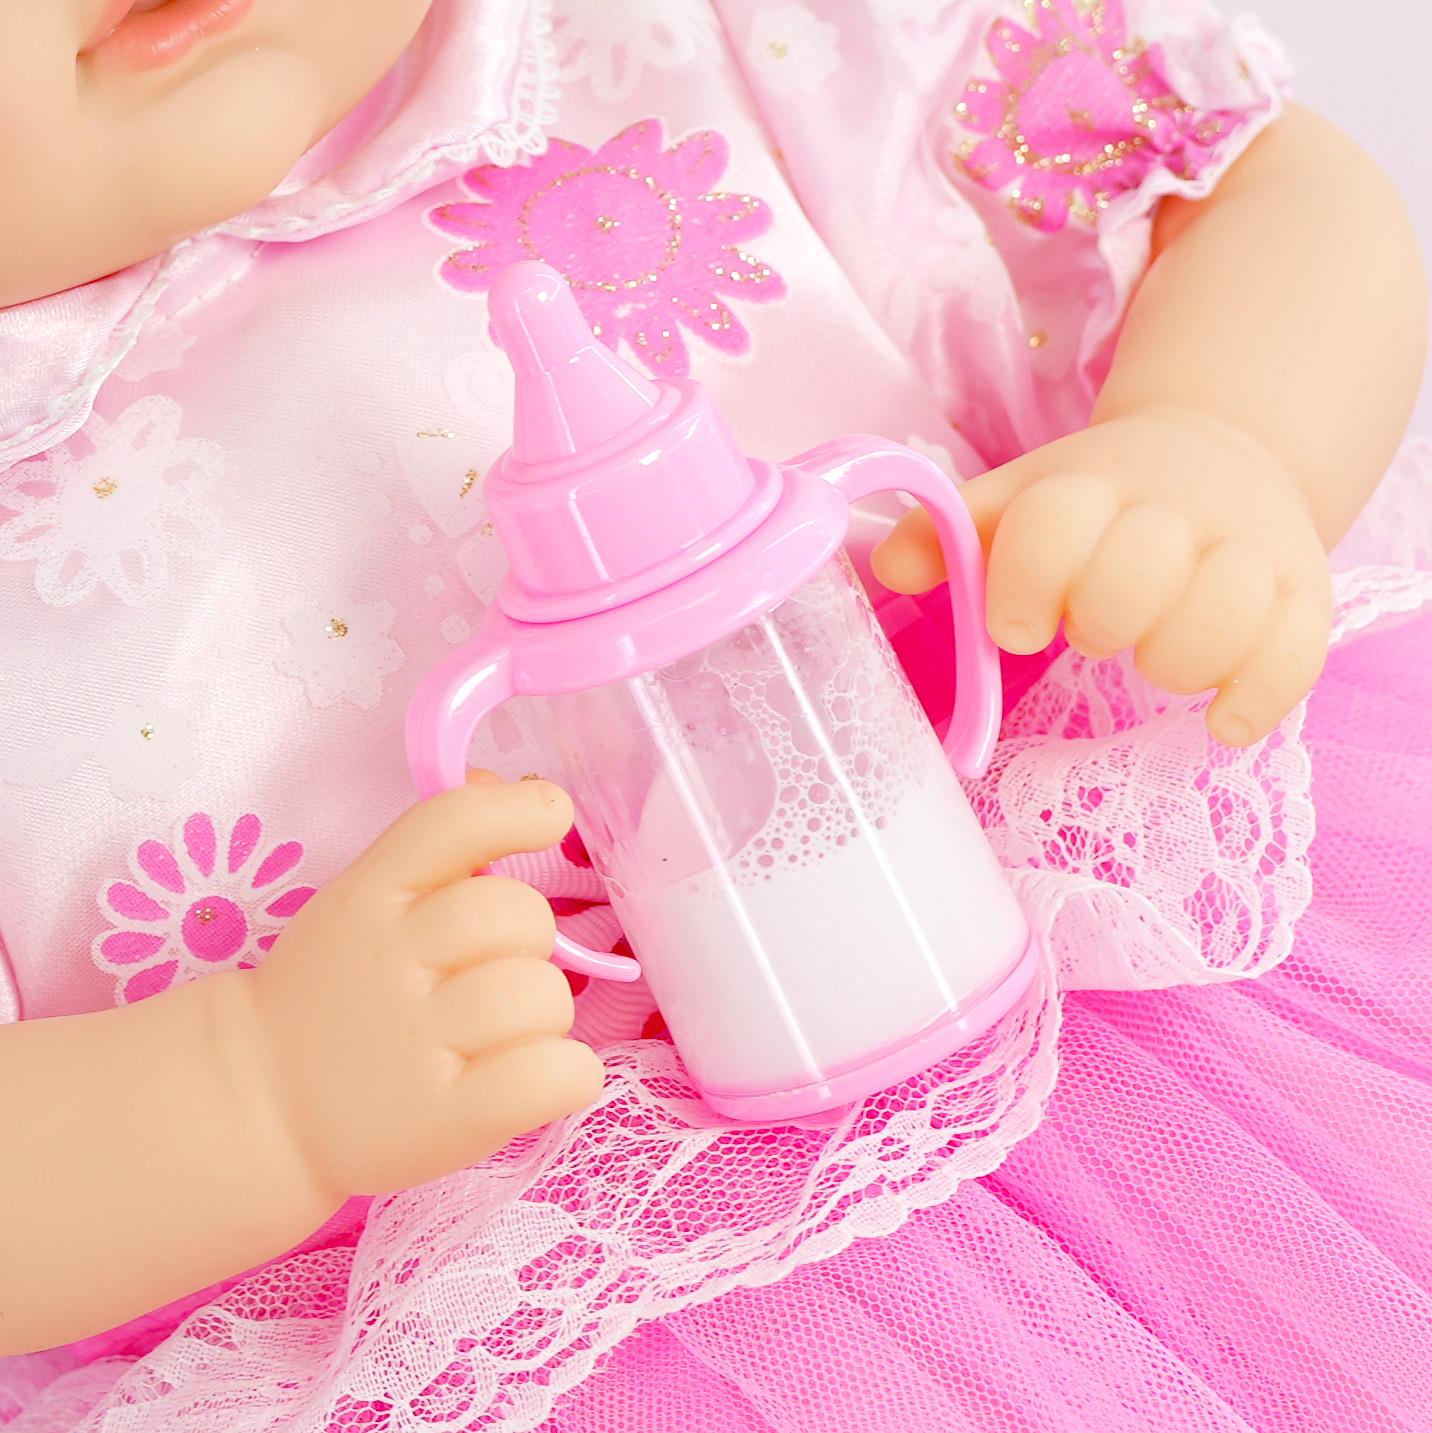 BiBi Doll Milk Bottle Set for Baby Dolls by BiBi Doll - UKBuyZone